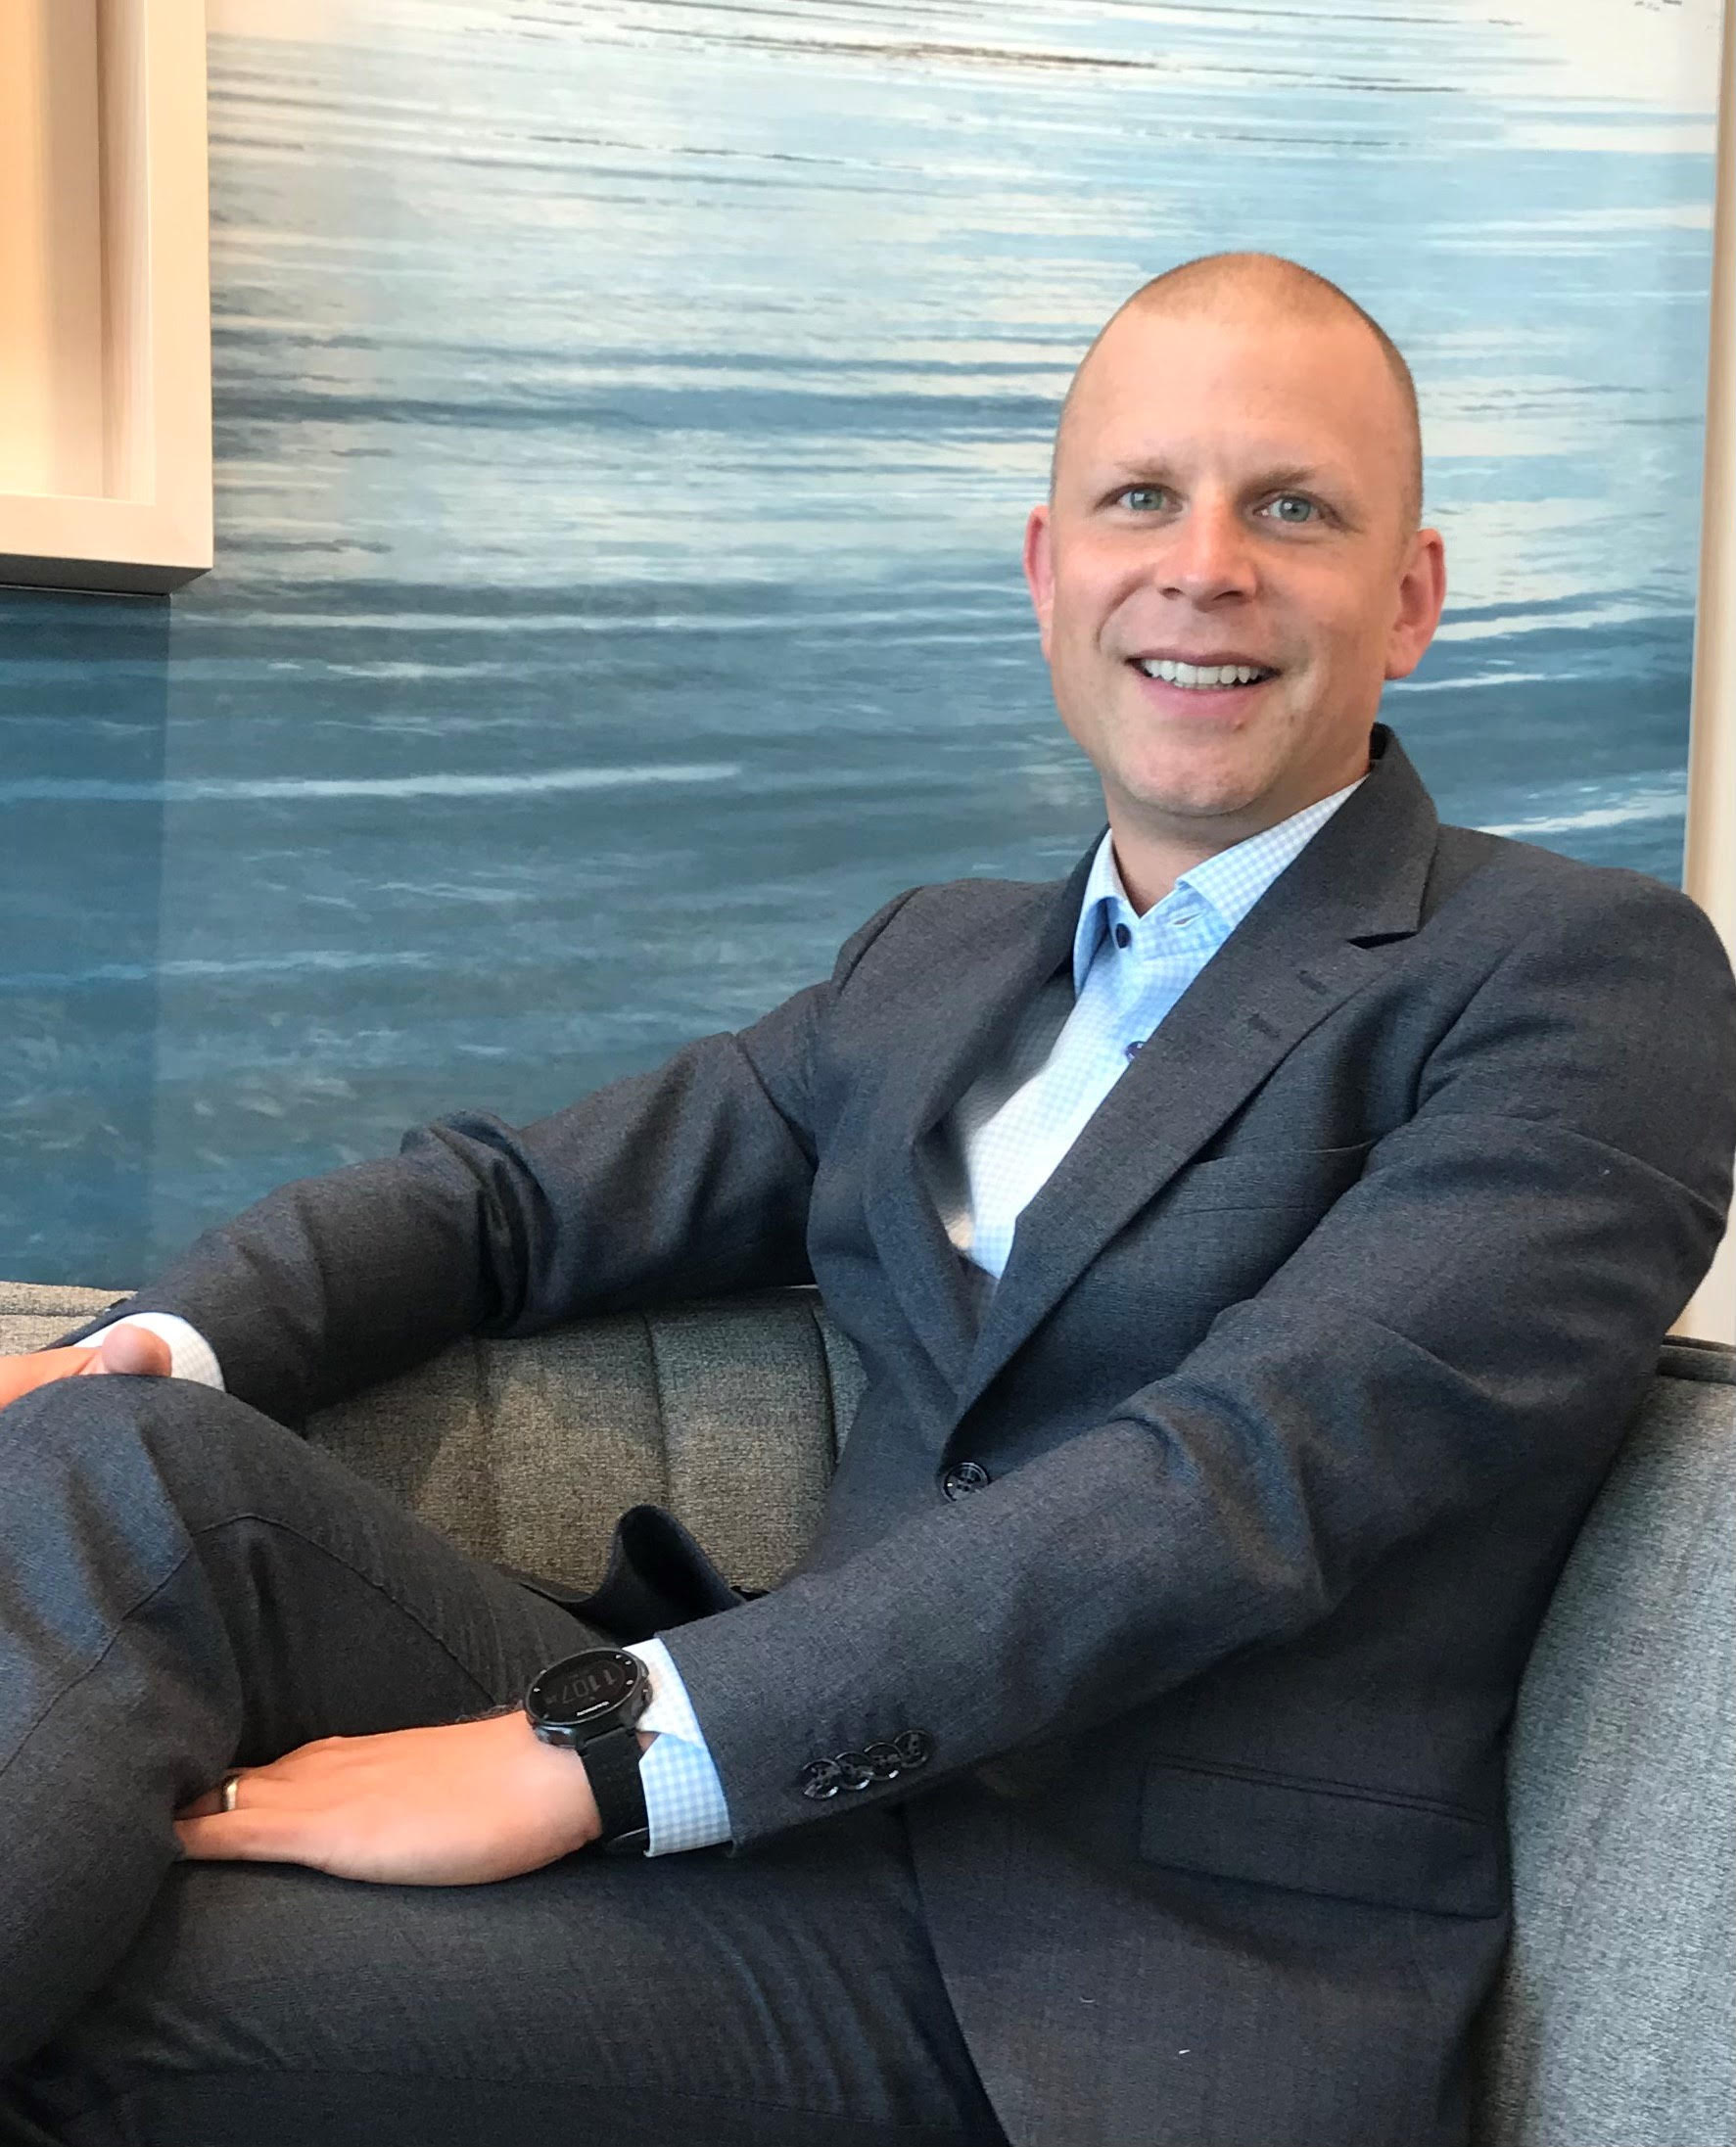 Martin Stenholm asumirá como nuevo director general de Volvo Chile